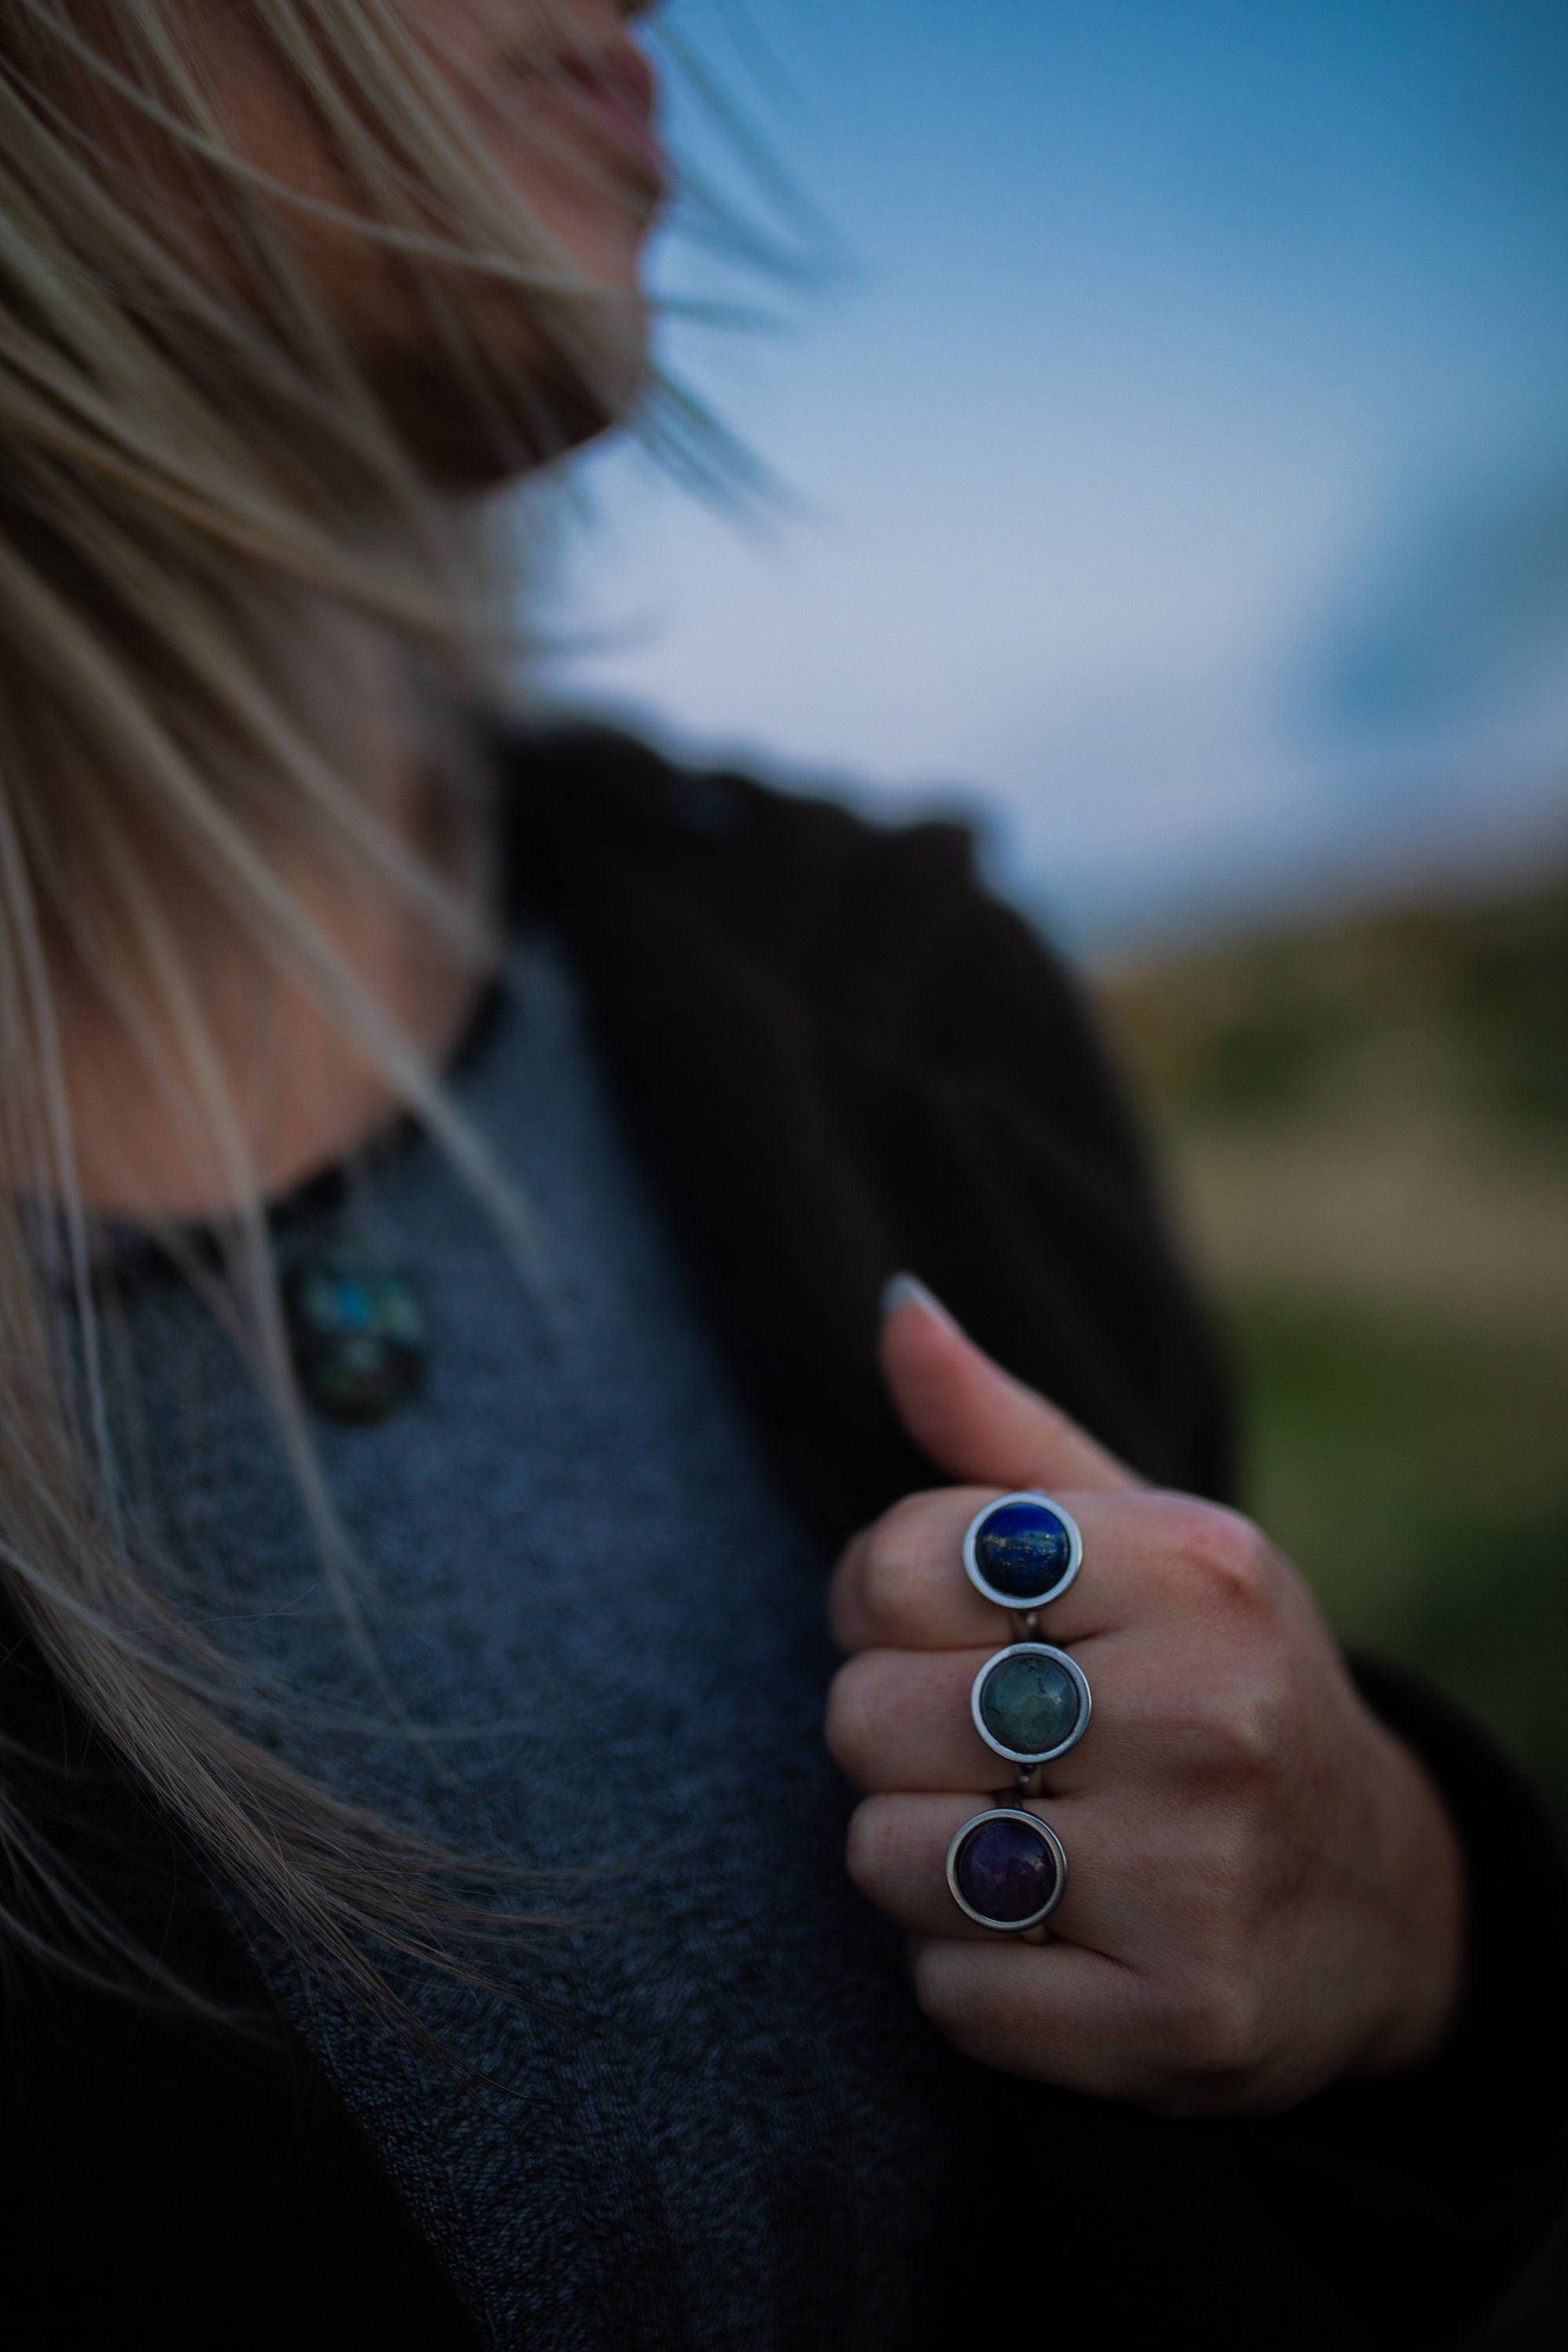 Lapis Lazuli Gemstone Ring - Silver